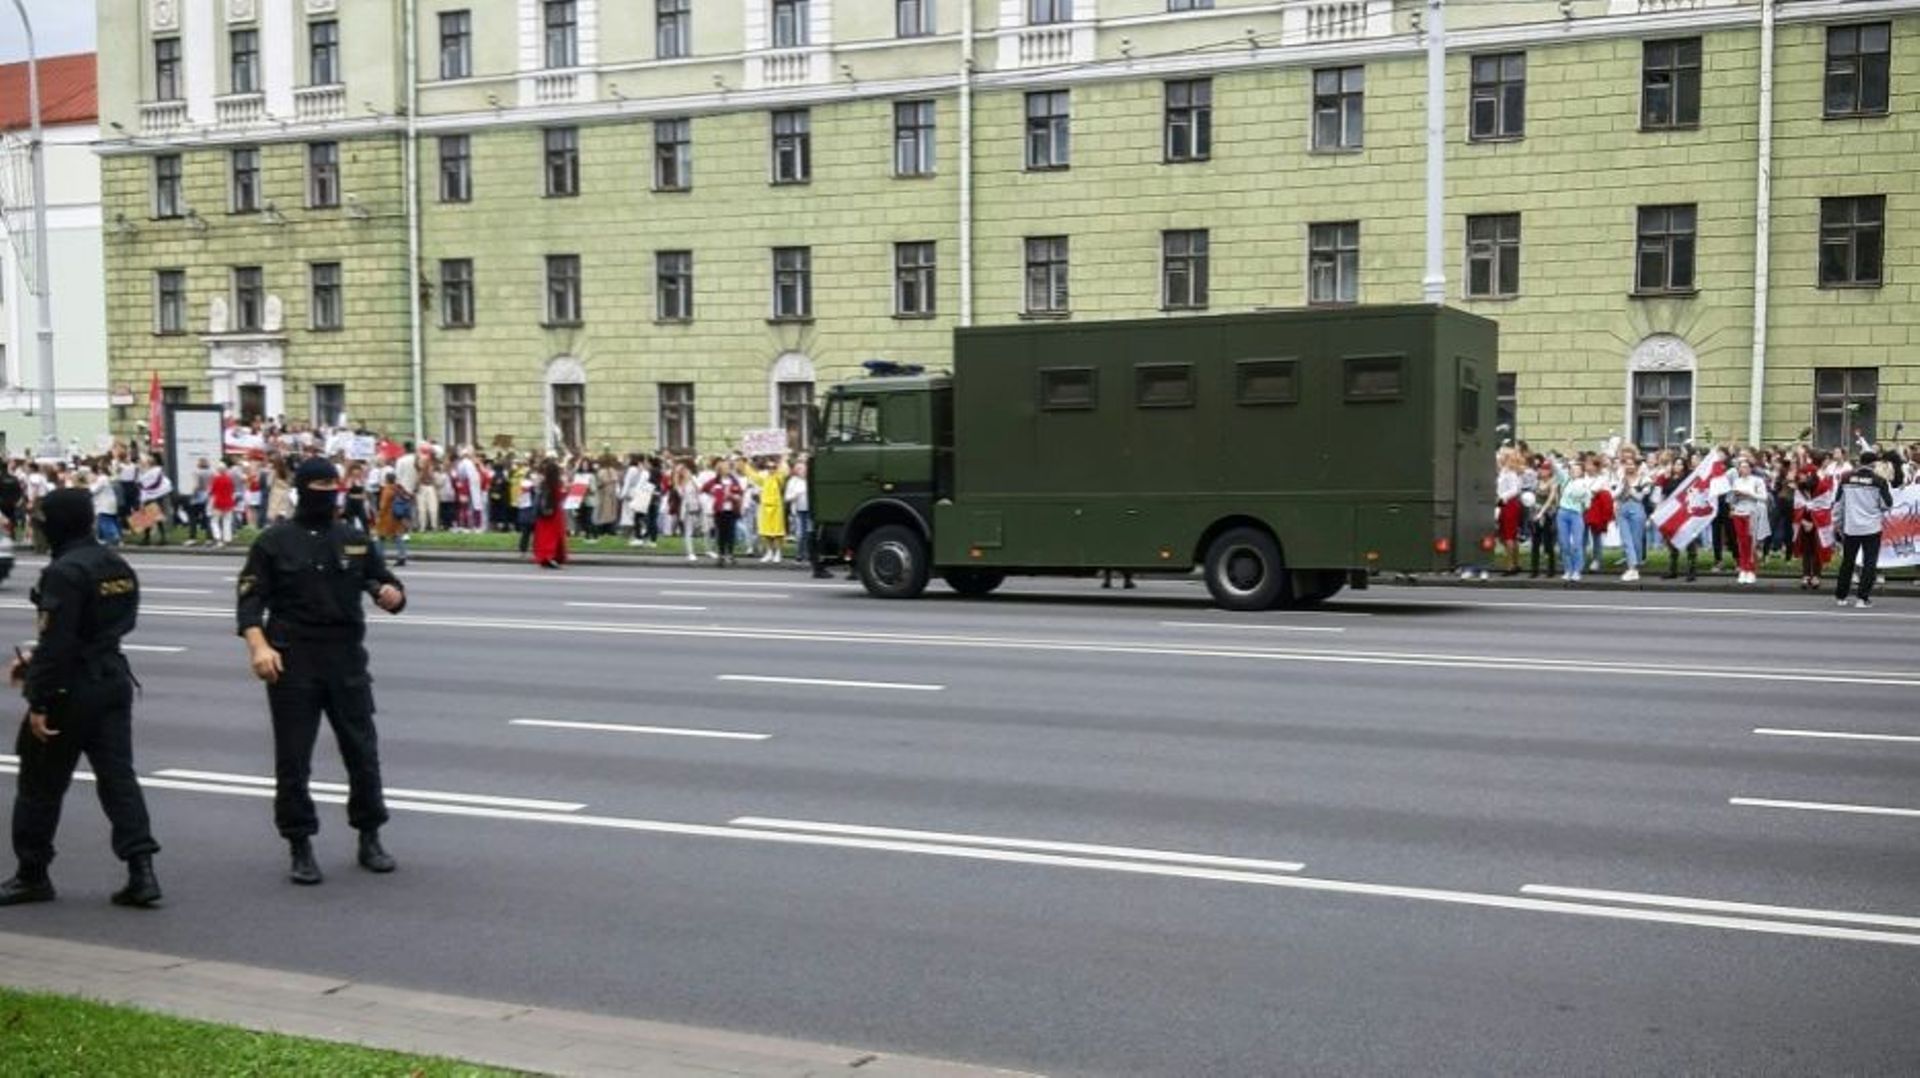 Dispositif policier dans une rue de Minsk pendant une manifestation de femmes, le 29 août 2020 à Minsk, au Bélarus